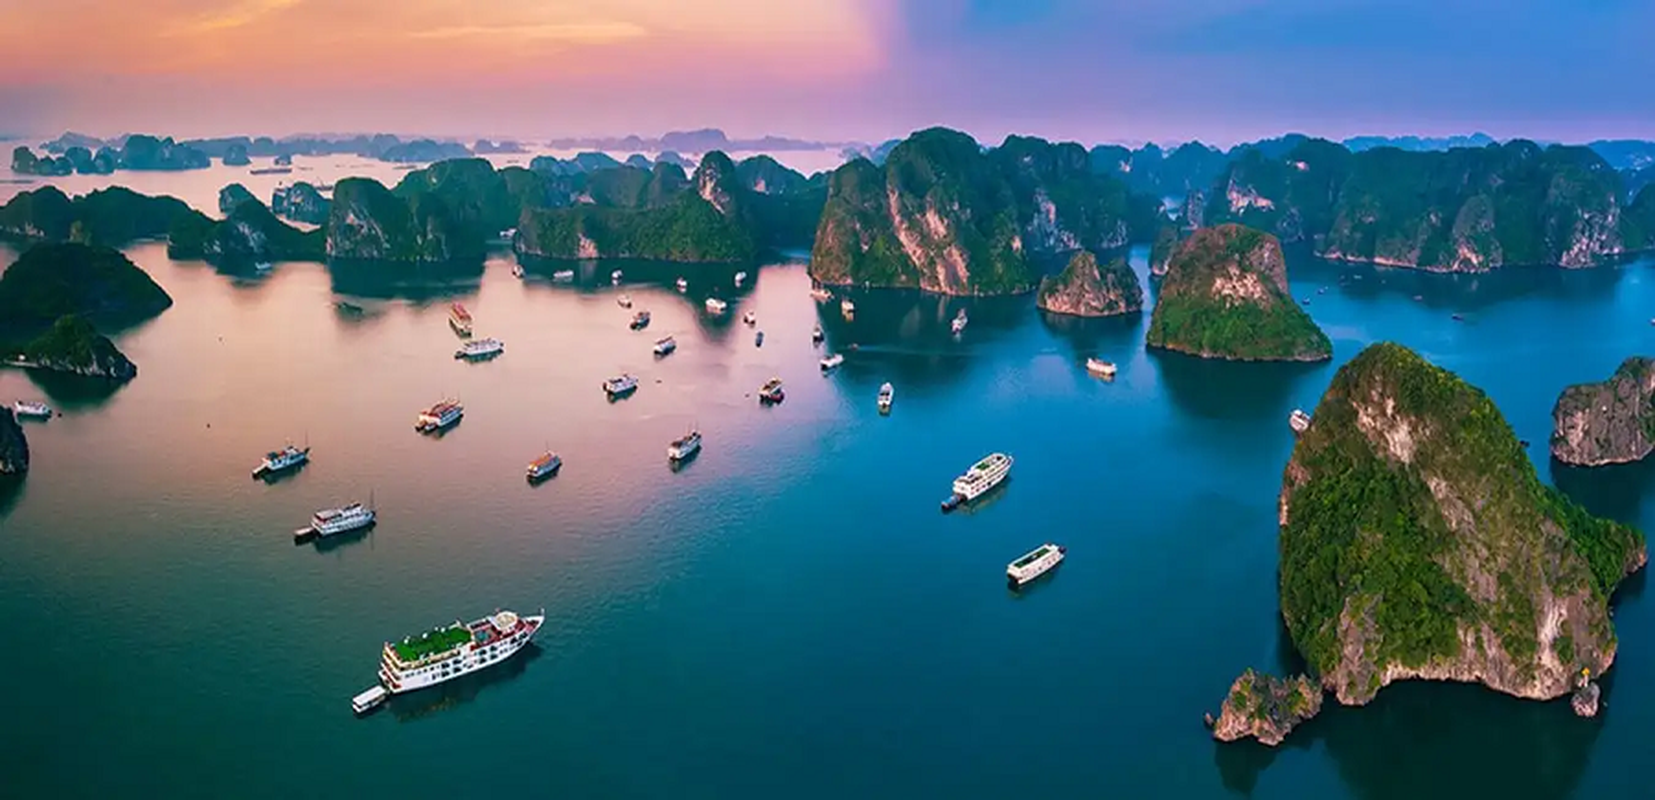 3 danh lam thắng cảnh Việt Nam tuyệt đẹp vào top di sản UNESCO - Ảnh 1.